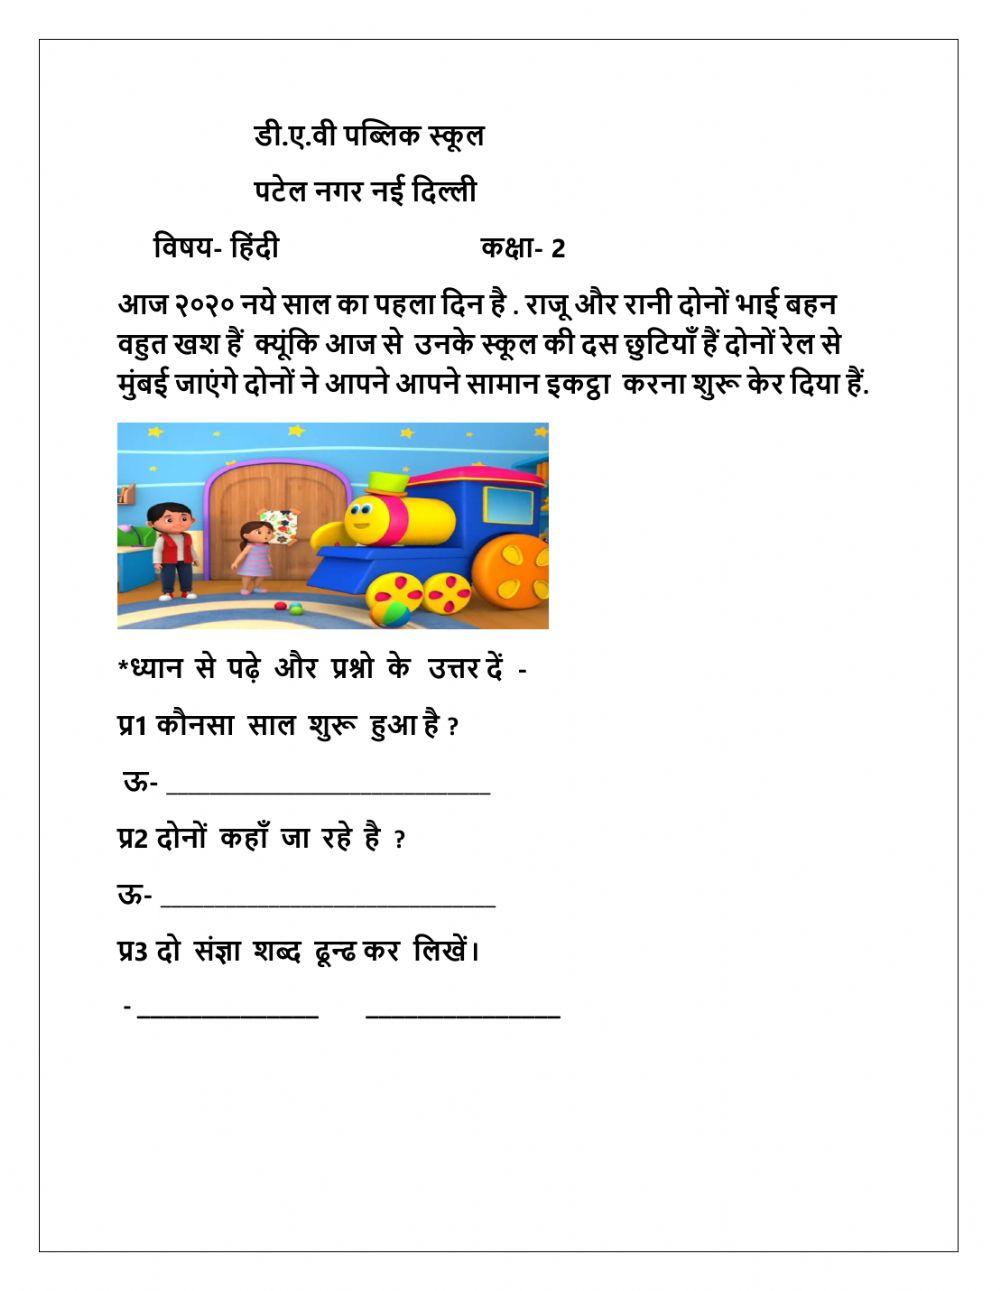 Hindi typing worksheet